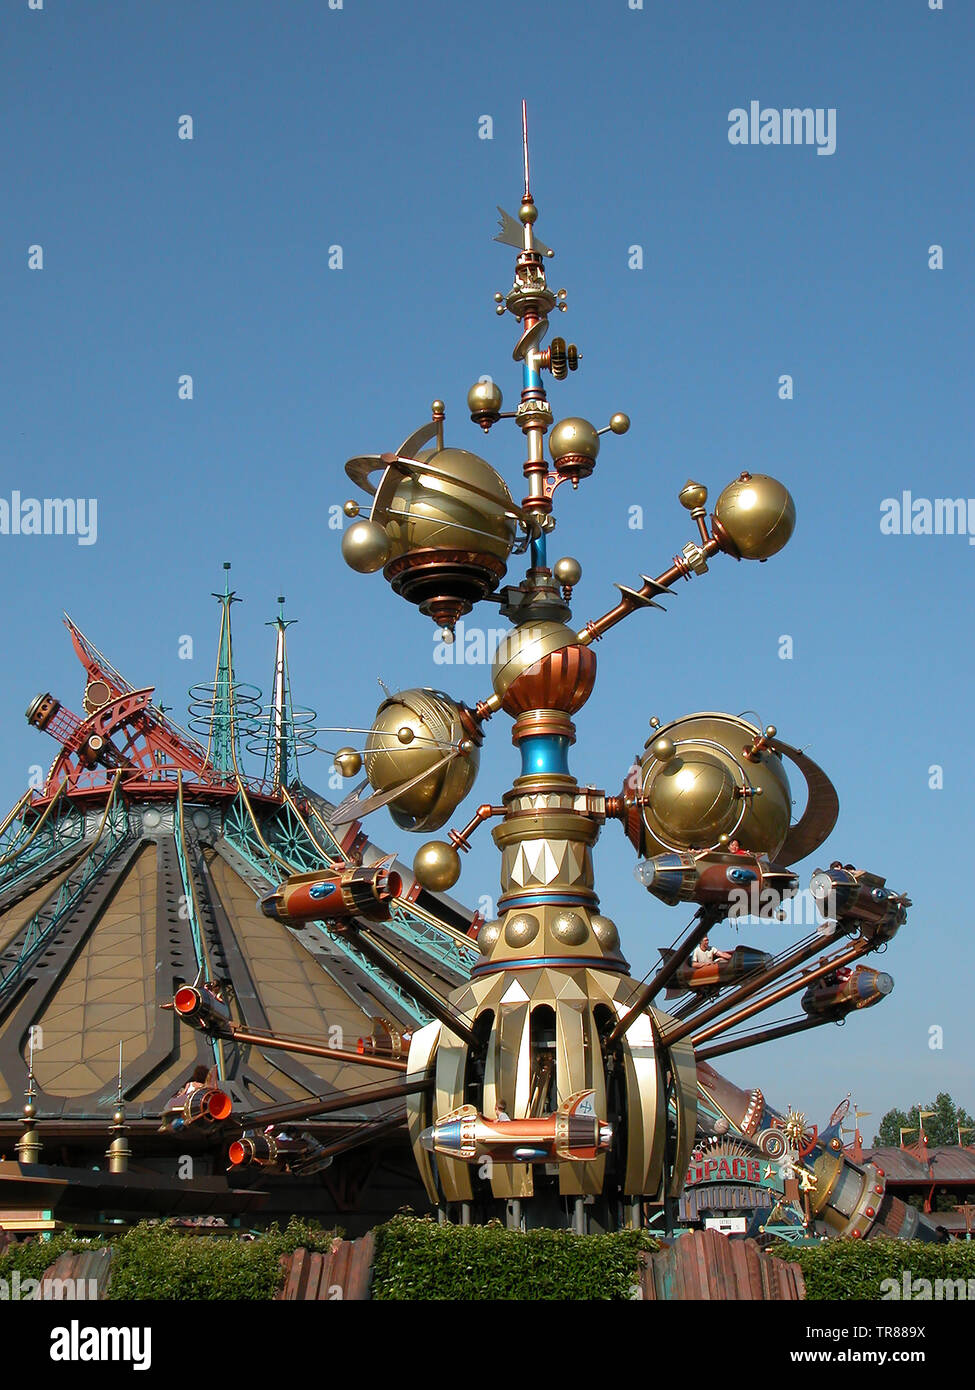 L'Orbitron, Machines volantes : une fusée spinner à Discoveryland, attraction du Parc Disneyland, Paris, avec l'espace derrière la montagne Banque D'Images